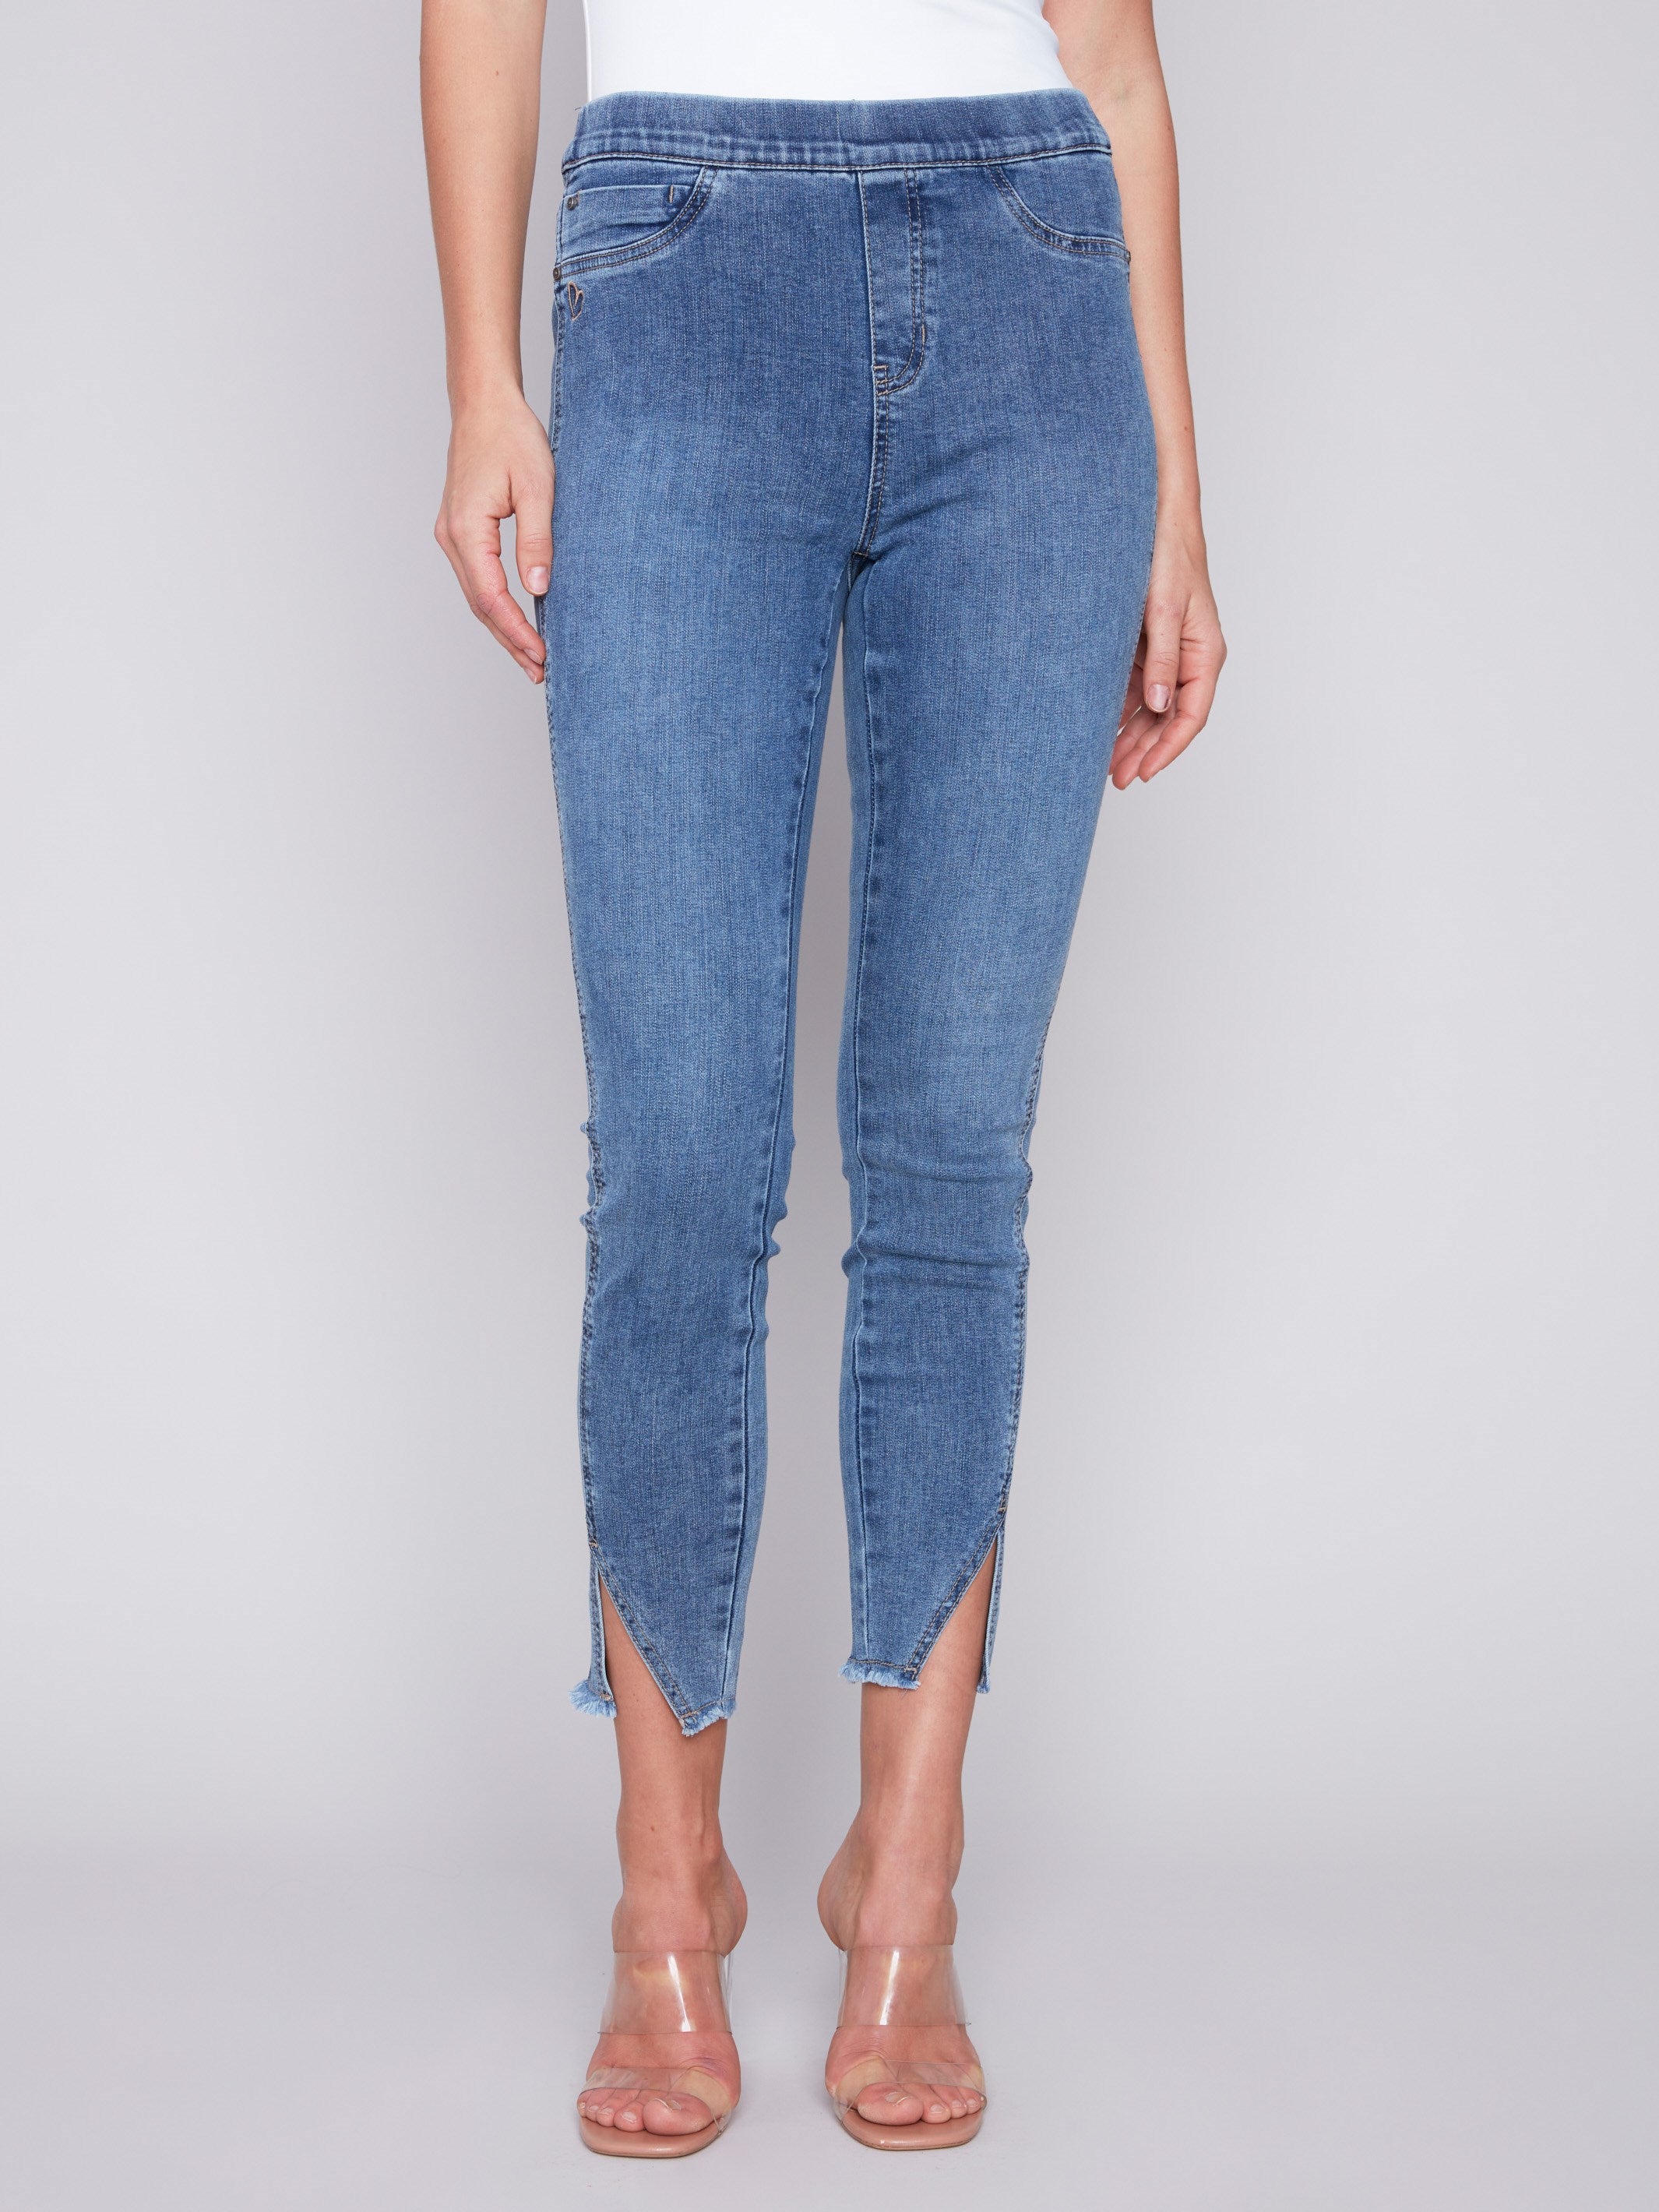 Charlie B Pull-On Jeans with Split Hem - Medium Blue - Image 2